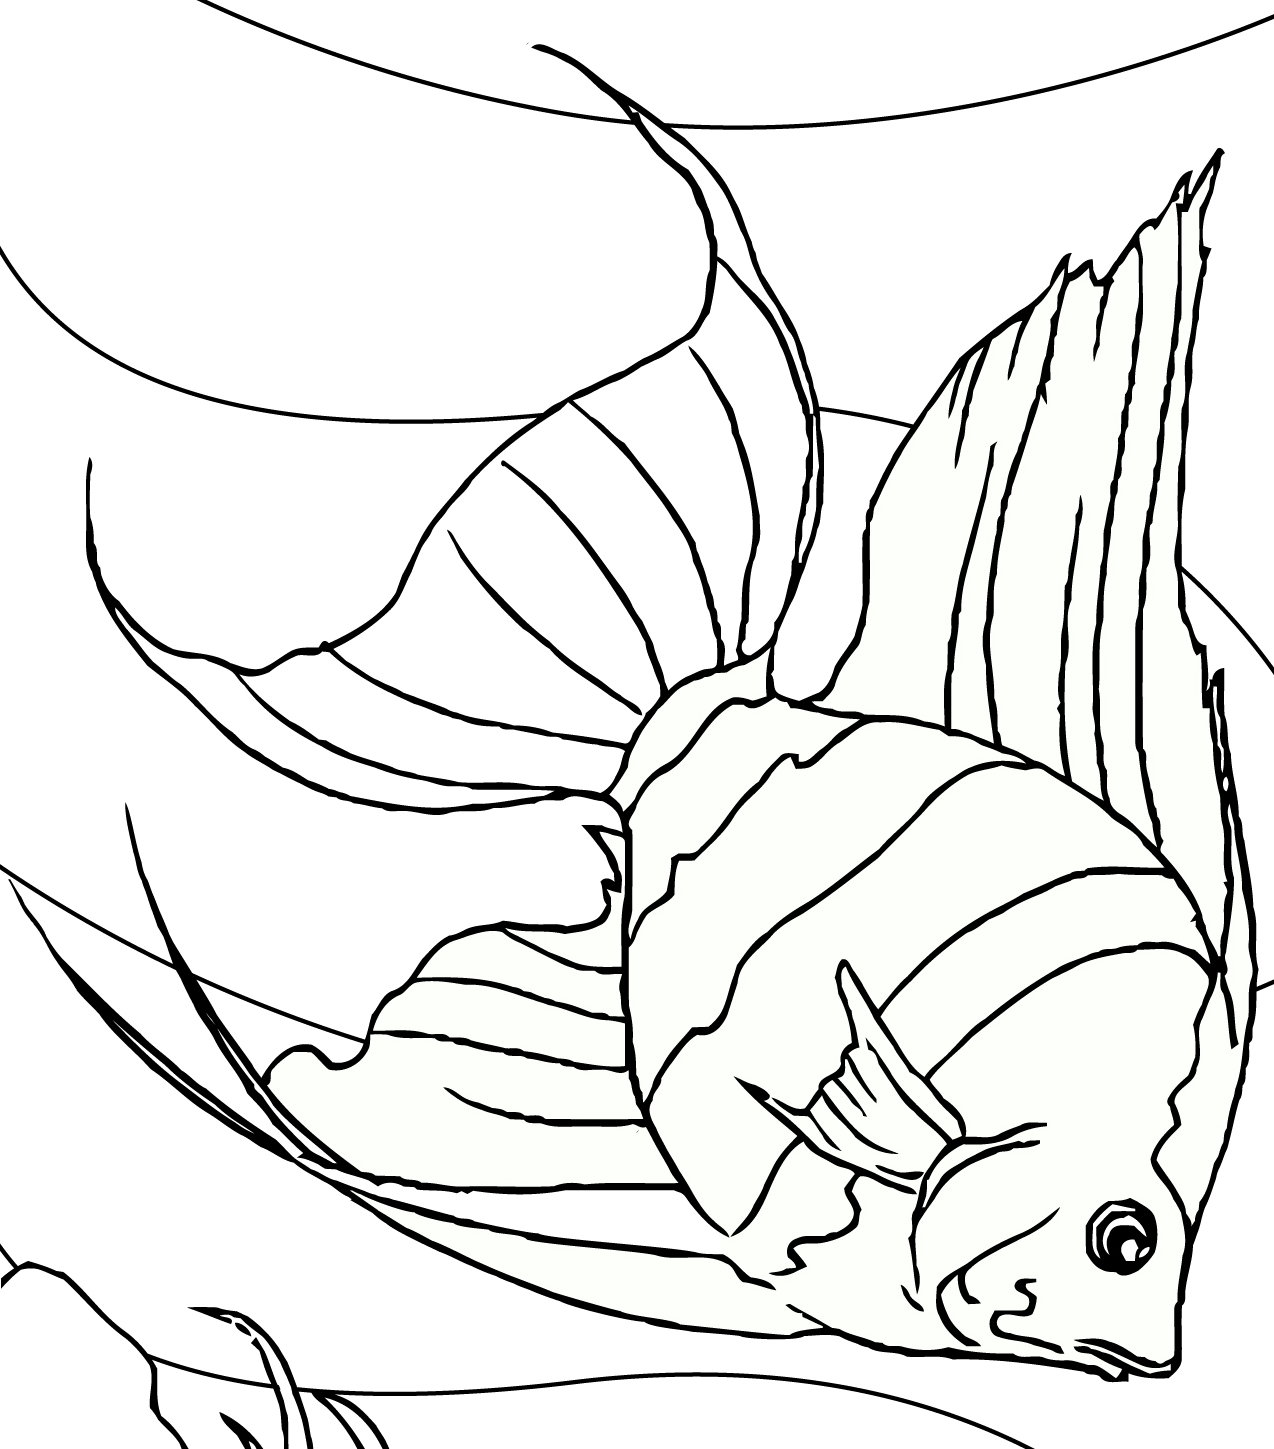  Gambar  Mewarnai  Hitam  Putih  Ikan Hias Air Tawar Untuk Anak SD TK PAUD Terbaru gambarcoloring